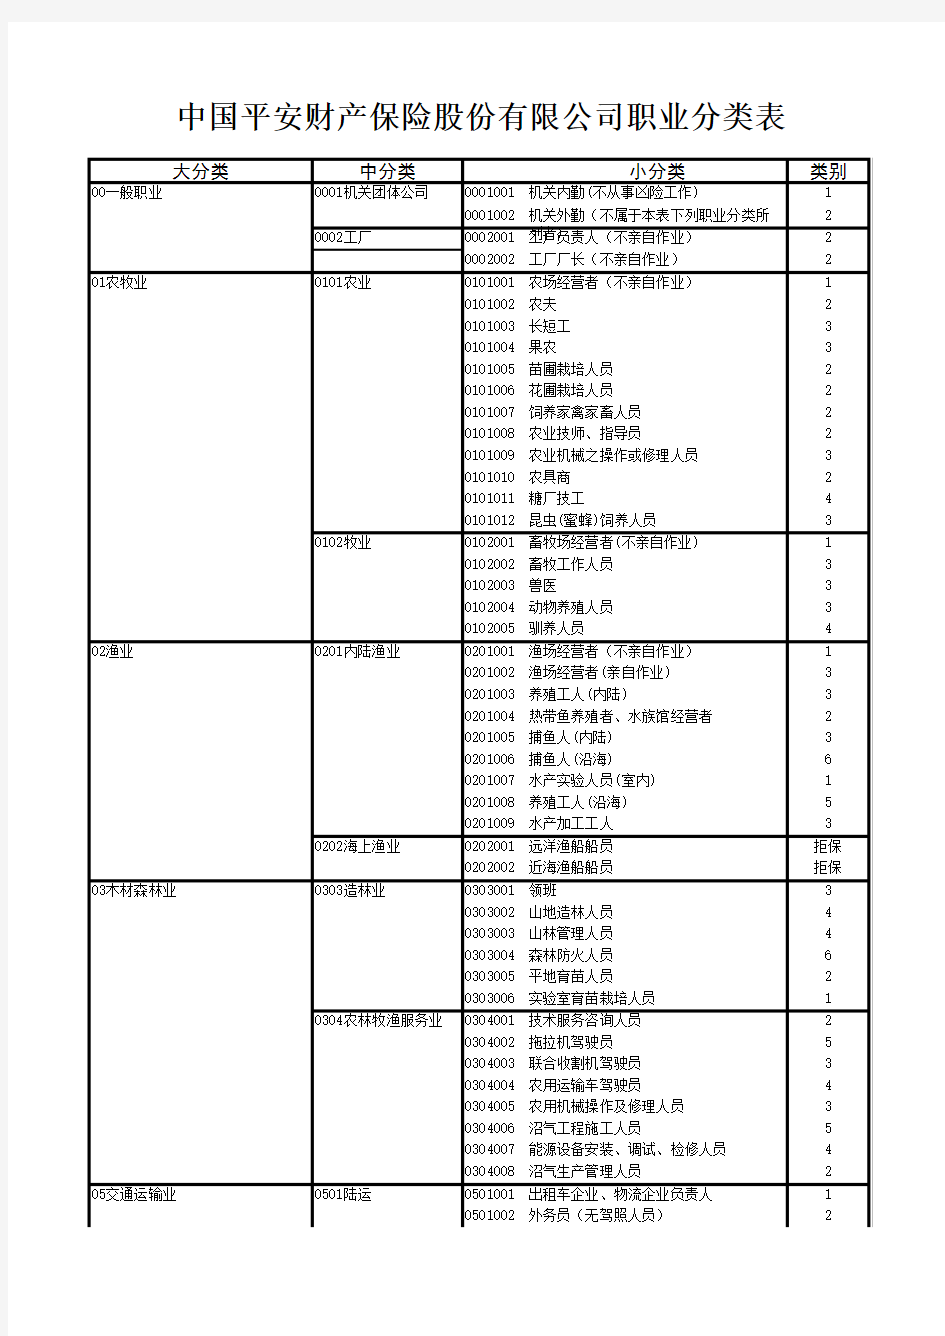 中国平安财产保险股份有限公司职业分类表